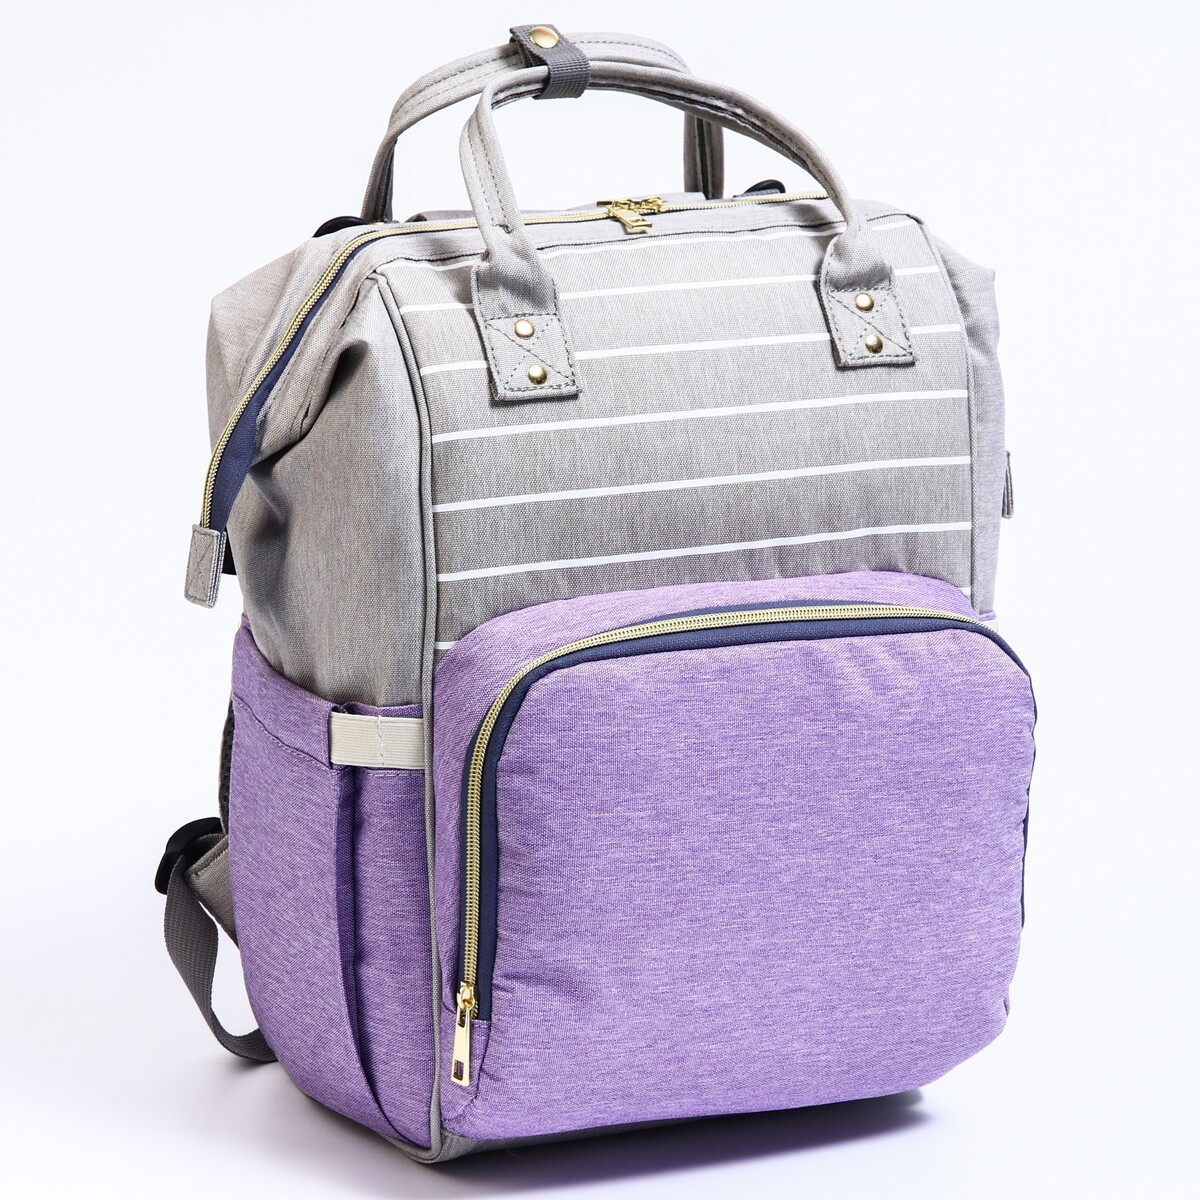 Рюкзак женский с термокарманом, термосумка - портфель, цвет серый/фиолетовый туалет средний с сеткой 36 х 26 х 6 5 см фиолетовый